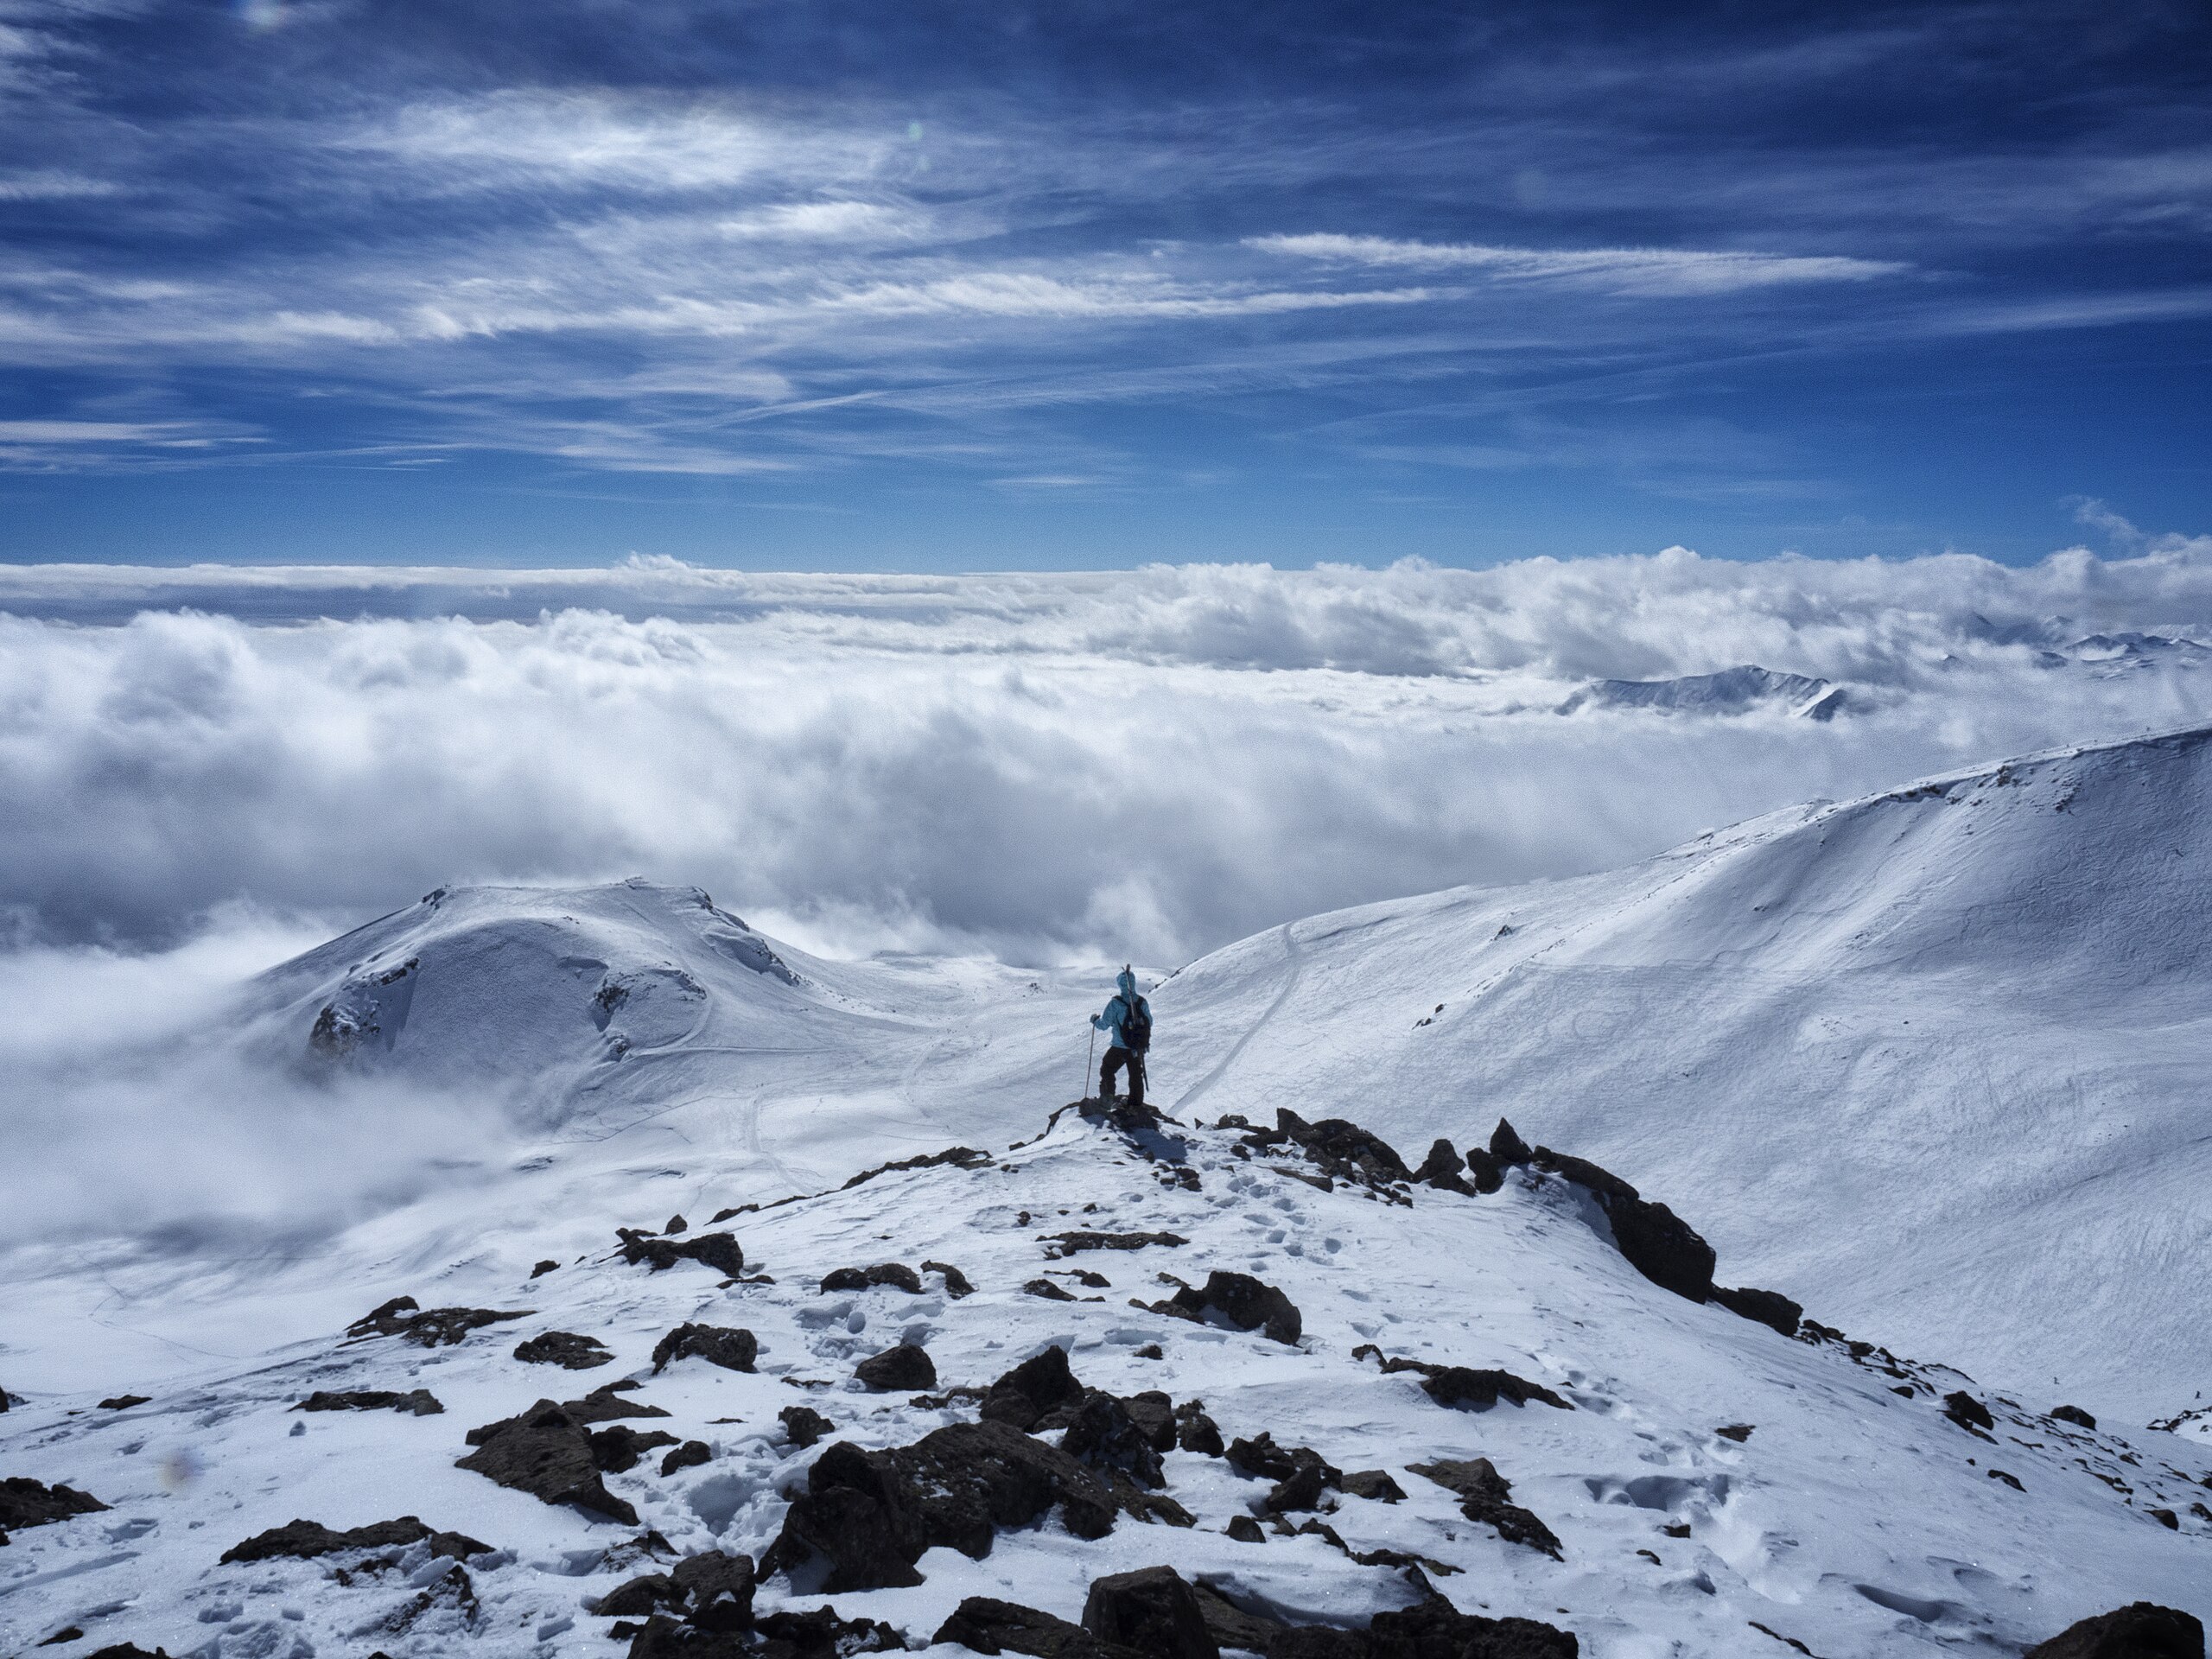 syreindhold Ikke nok klint File:Top of a snowy mountain (Unsplash).jpg - Wikimedia Commons